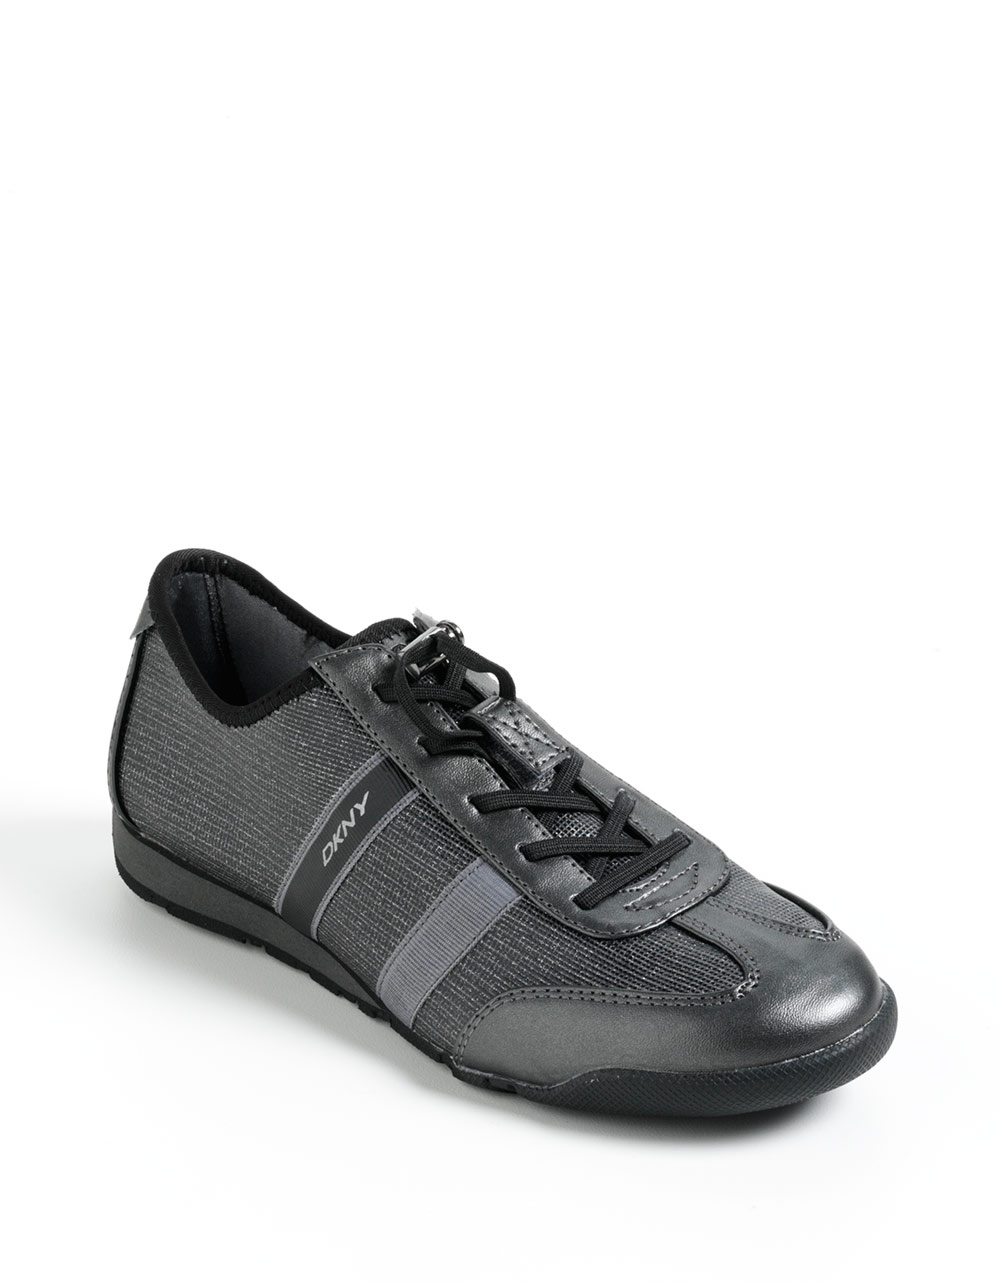 DKNY Metallic Sneakers in Gray - Lyst